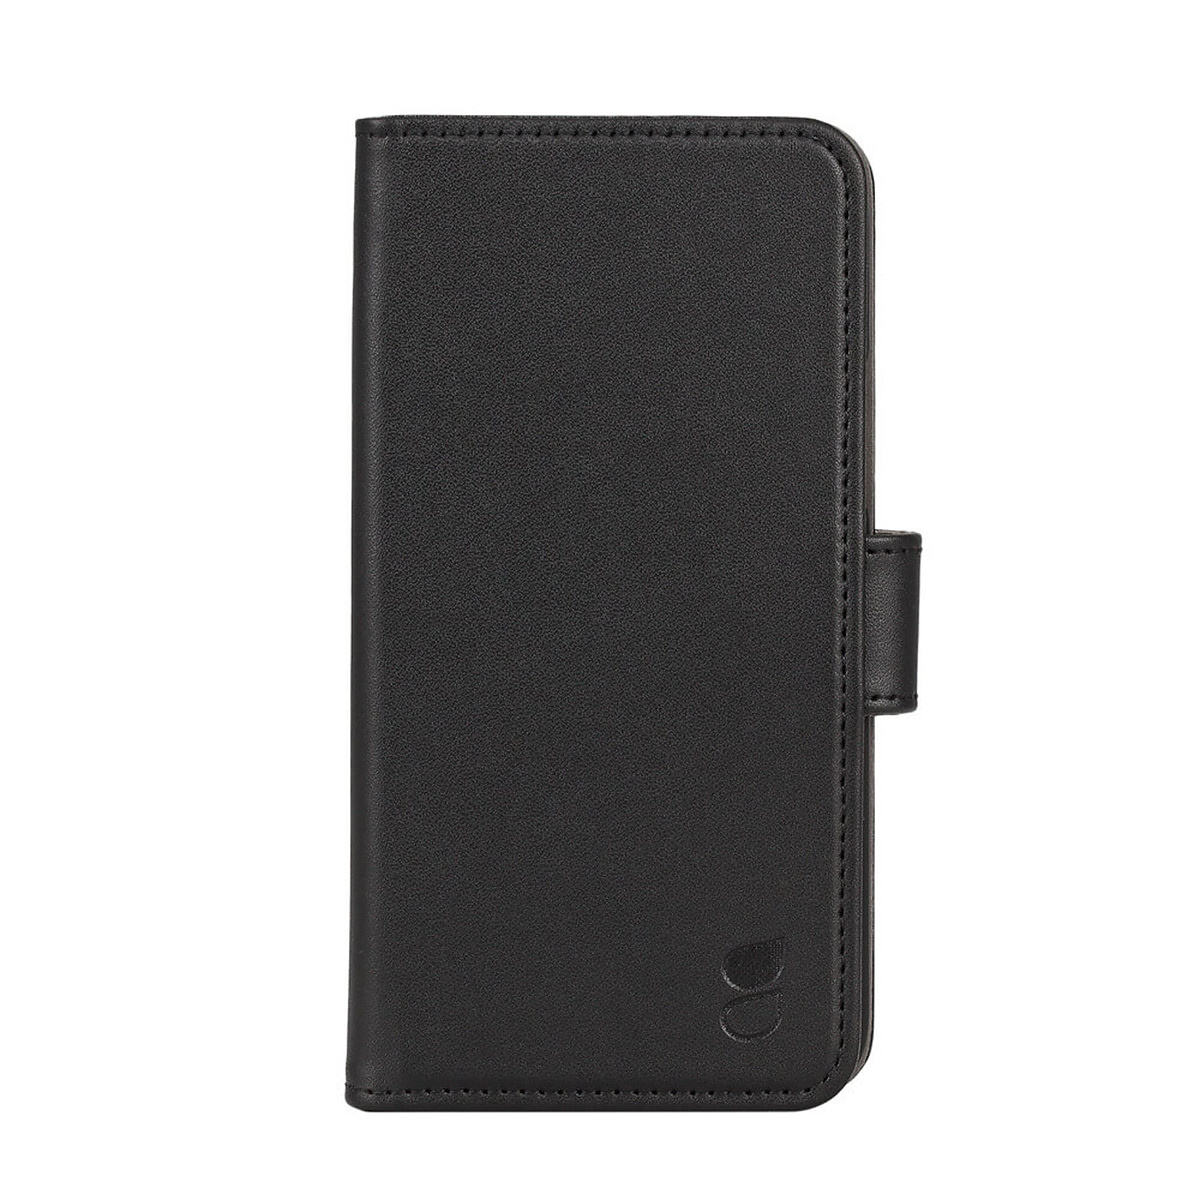 Gear plånboksväska, iPhone 11 Pro, svart